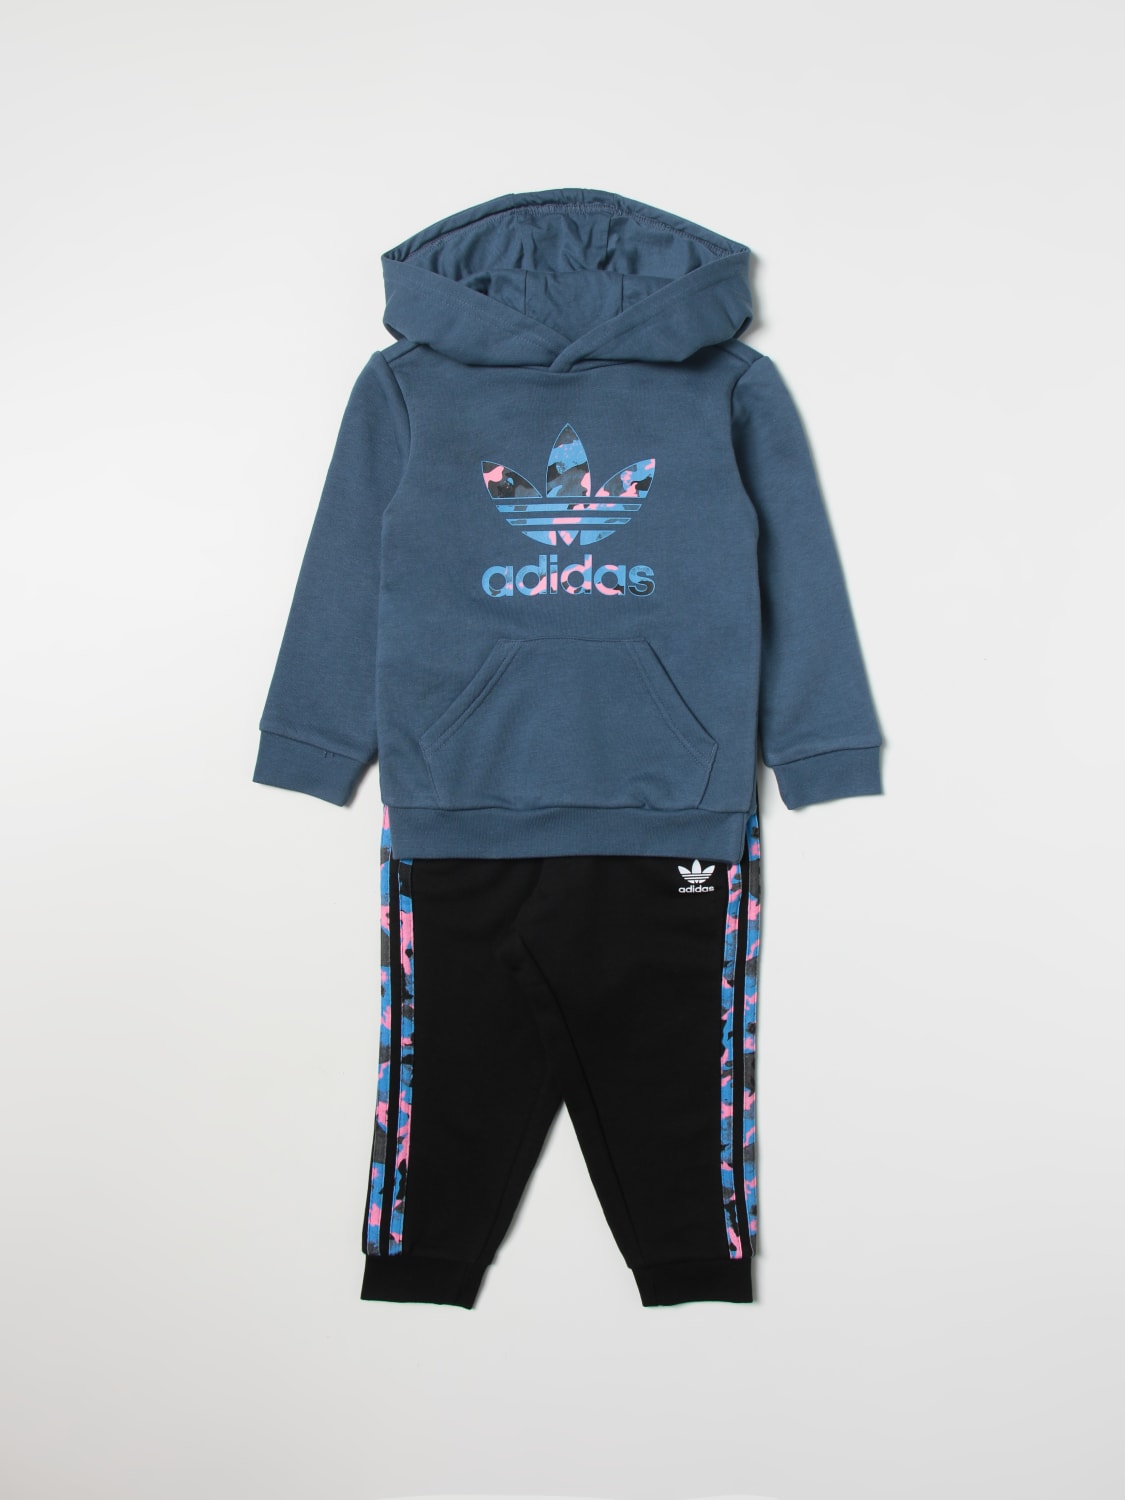 Slange Som Quagmire ADIDAS ORIGINALS: clothing set for boys - Blue | Adidas Originals clothing  set HK0330 online on GIGLIO.COM